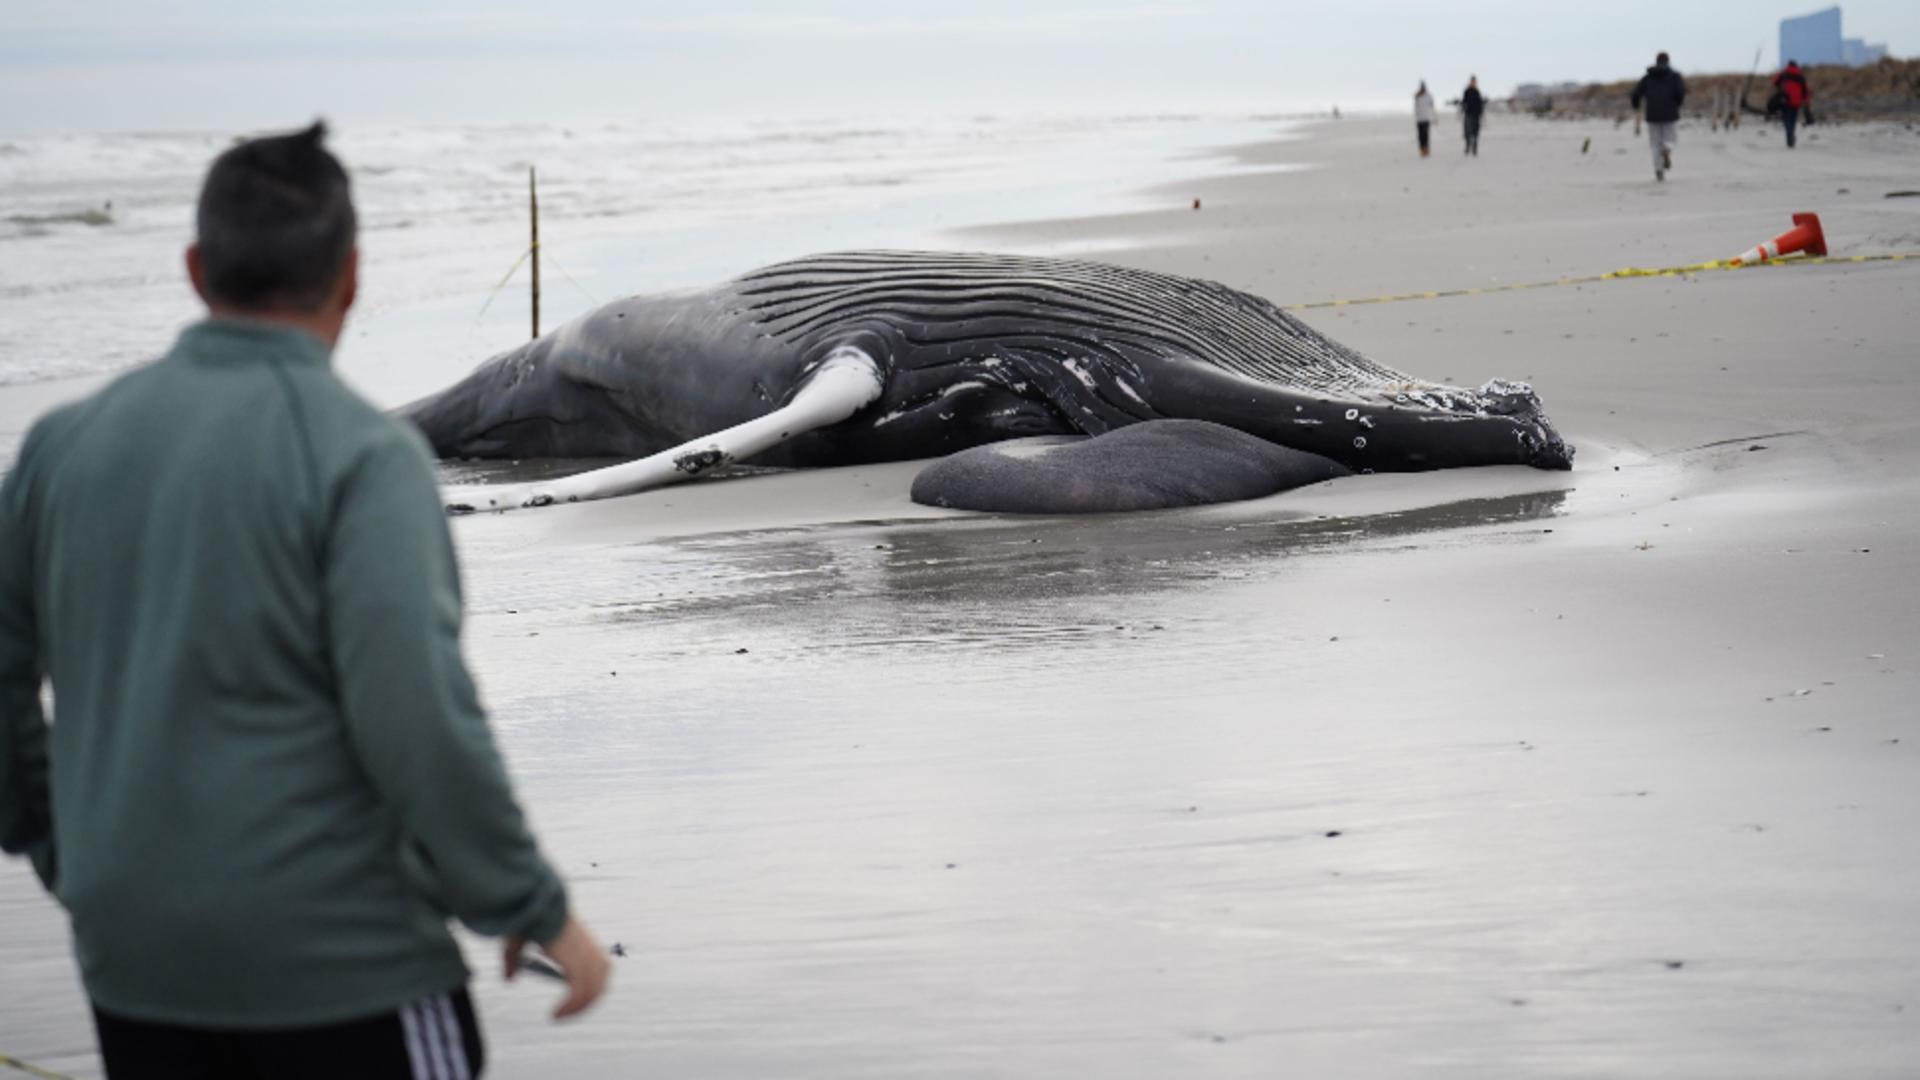 Balene eșuate din cauza cutremurului din Turcia. Foto/Profimedia